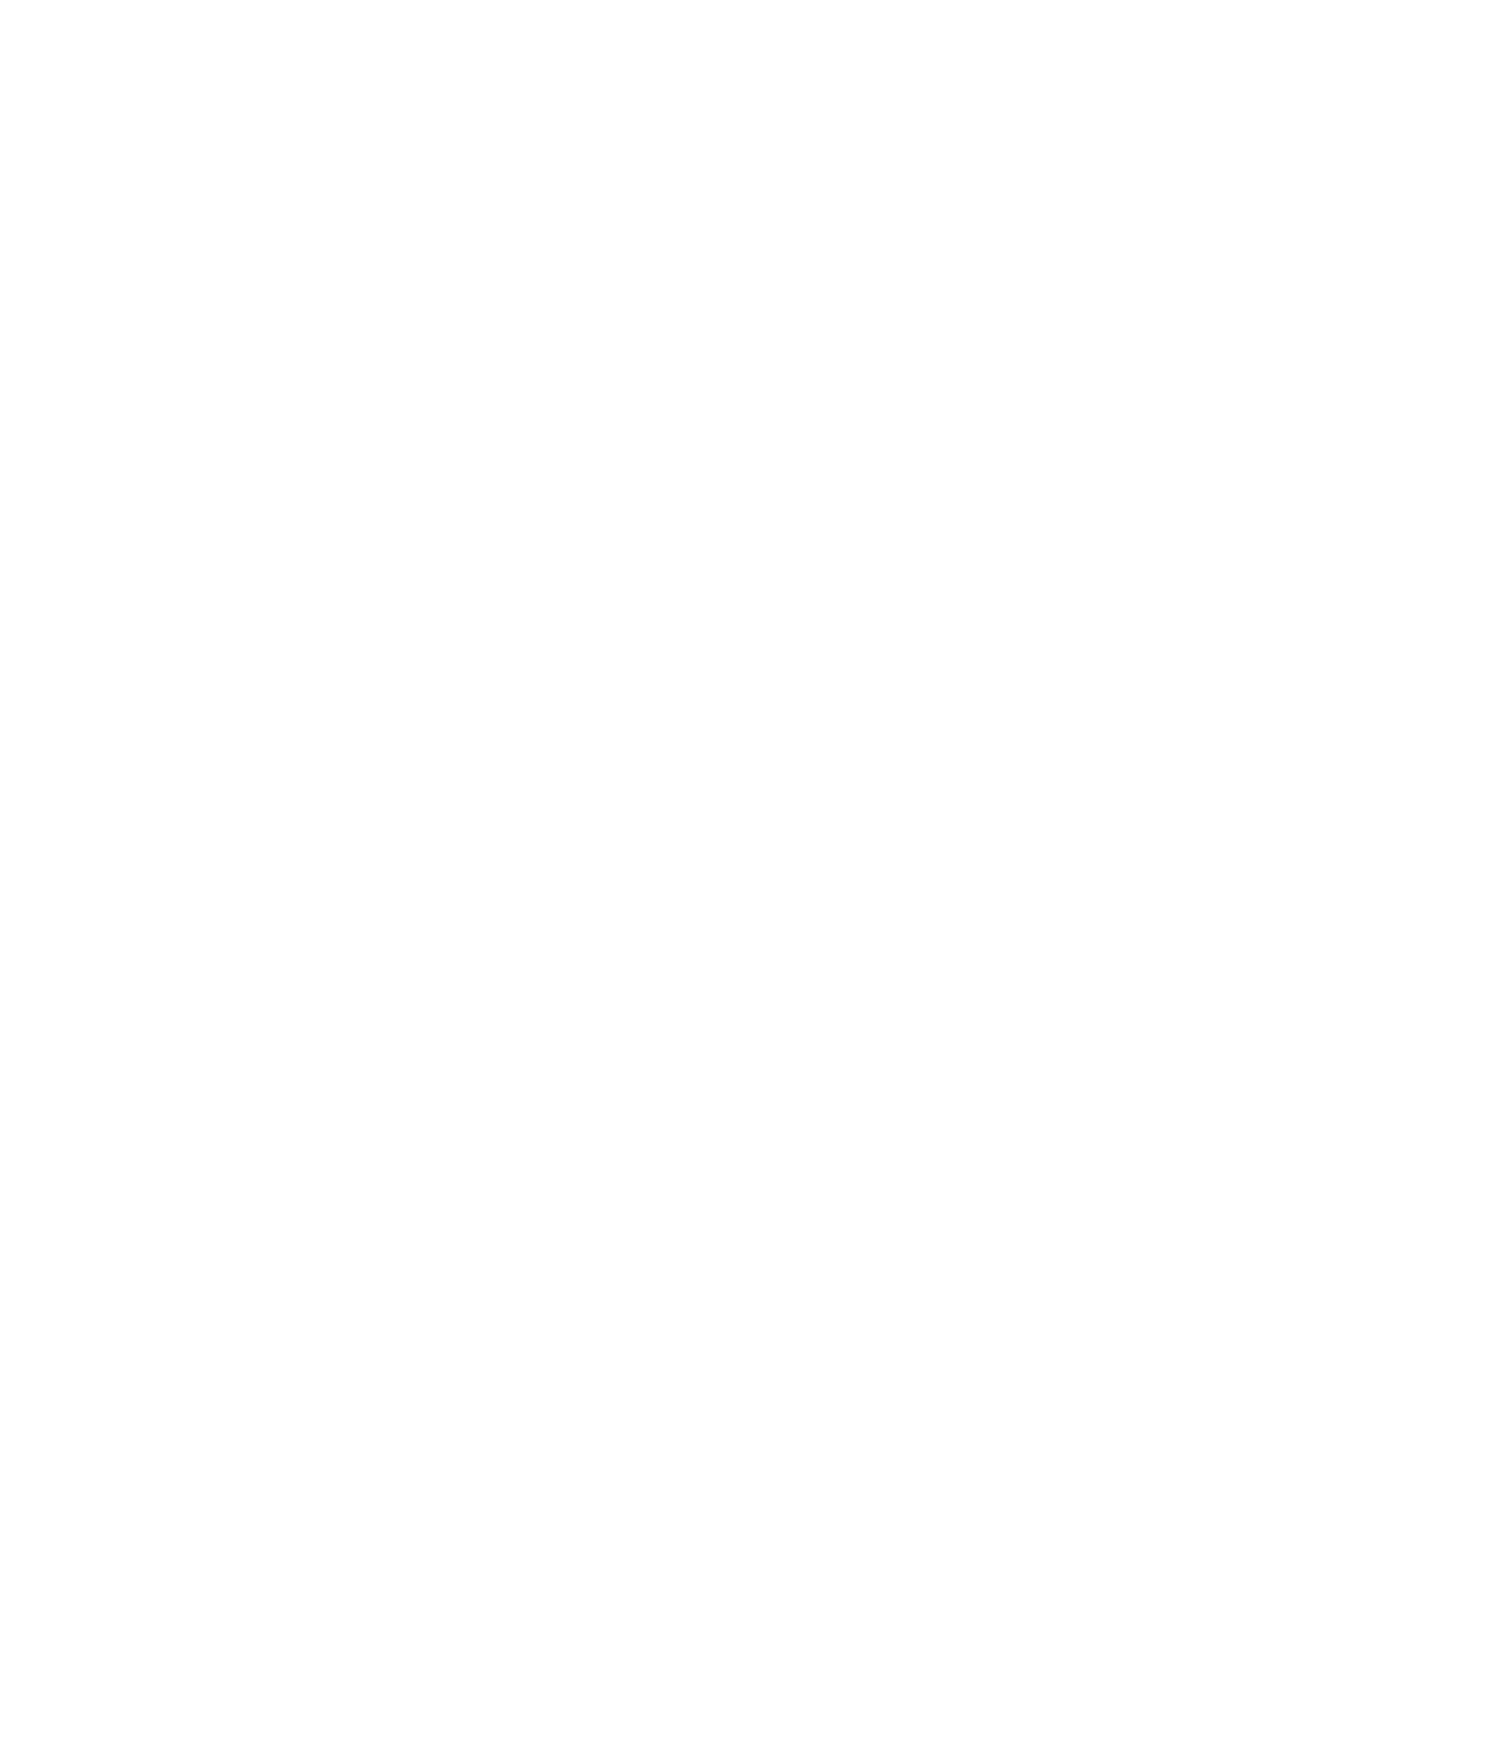 Burke Agro de Nicaragua, S.A.